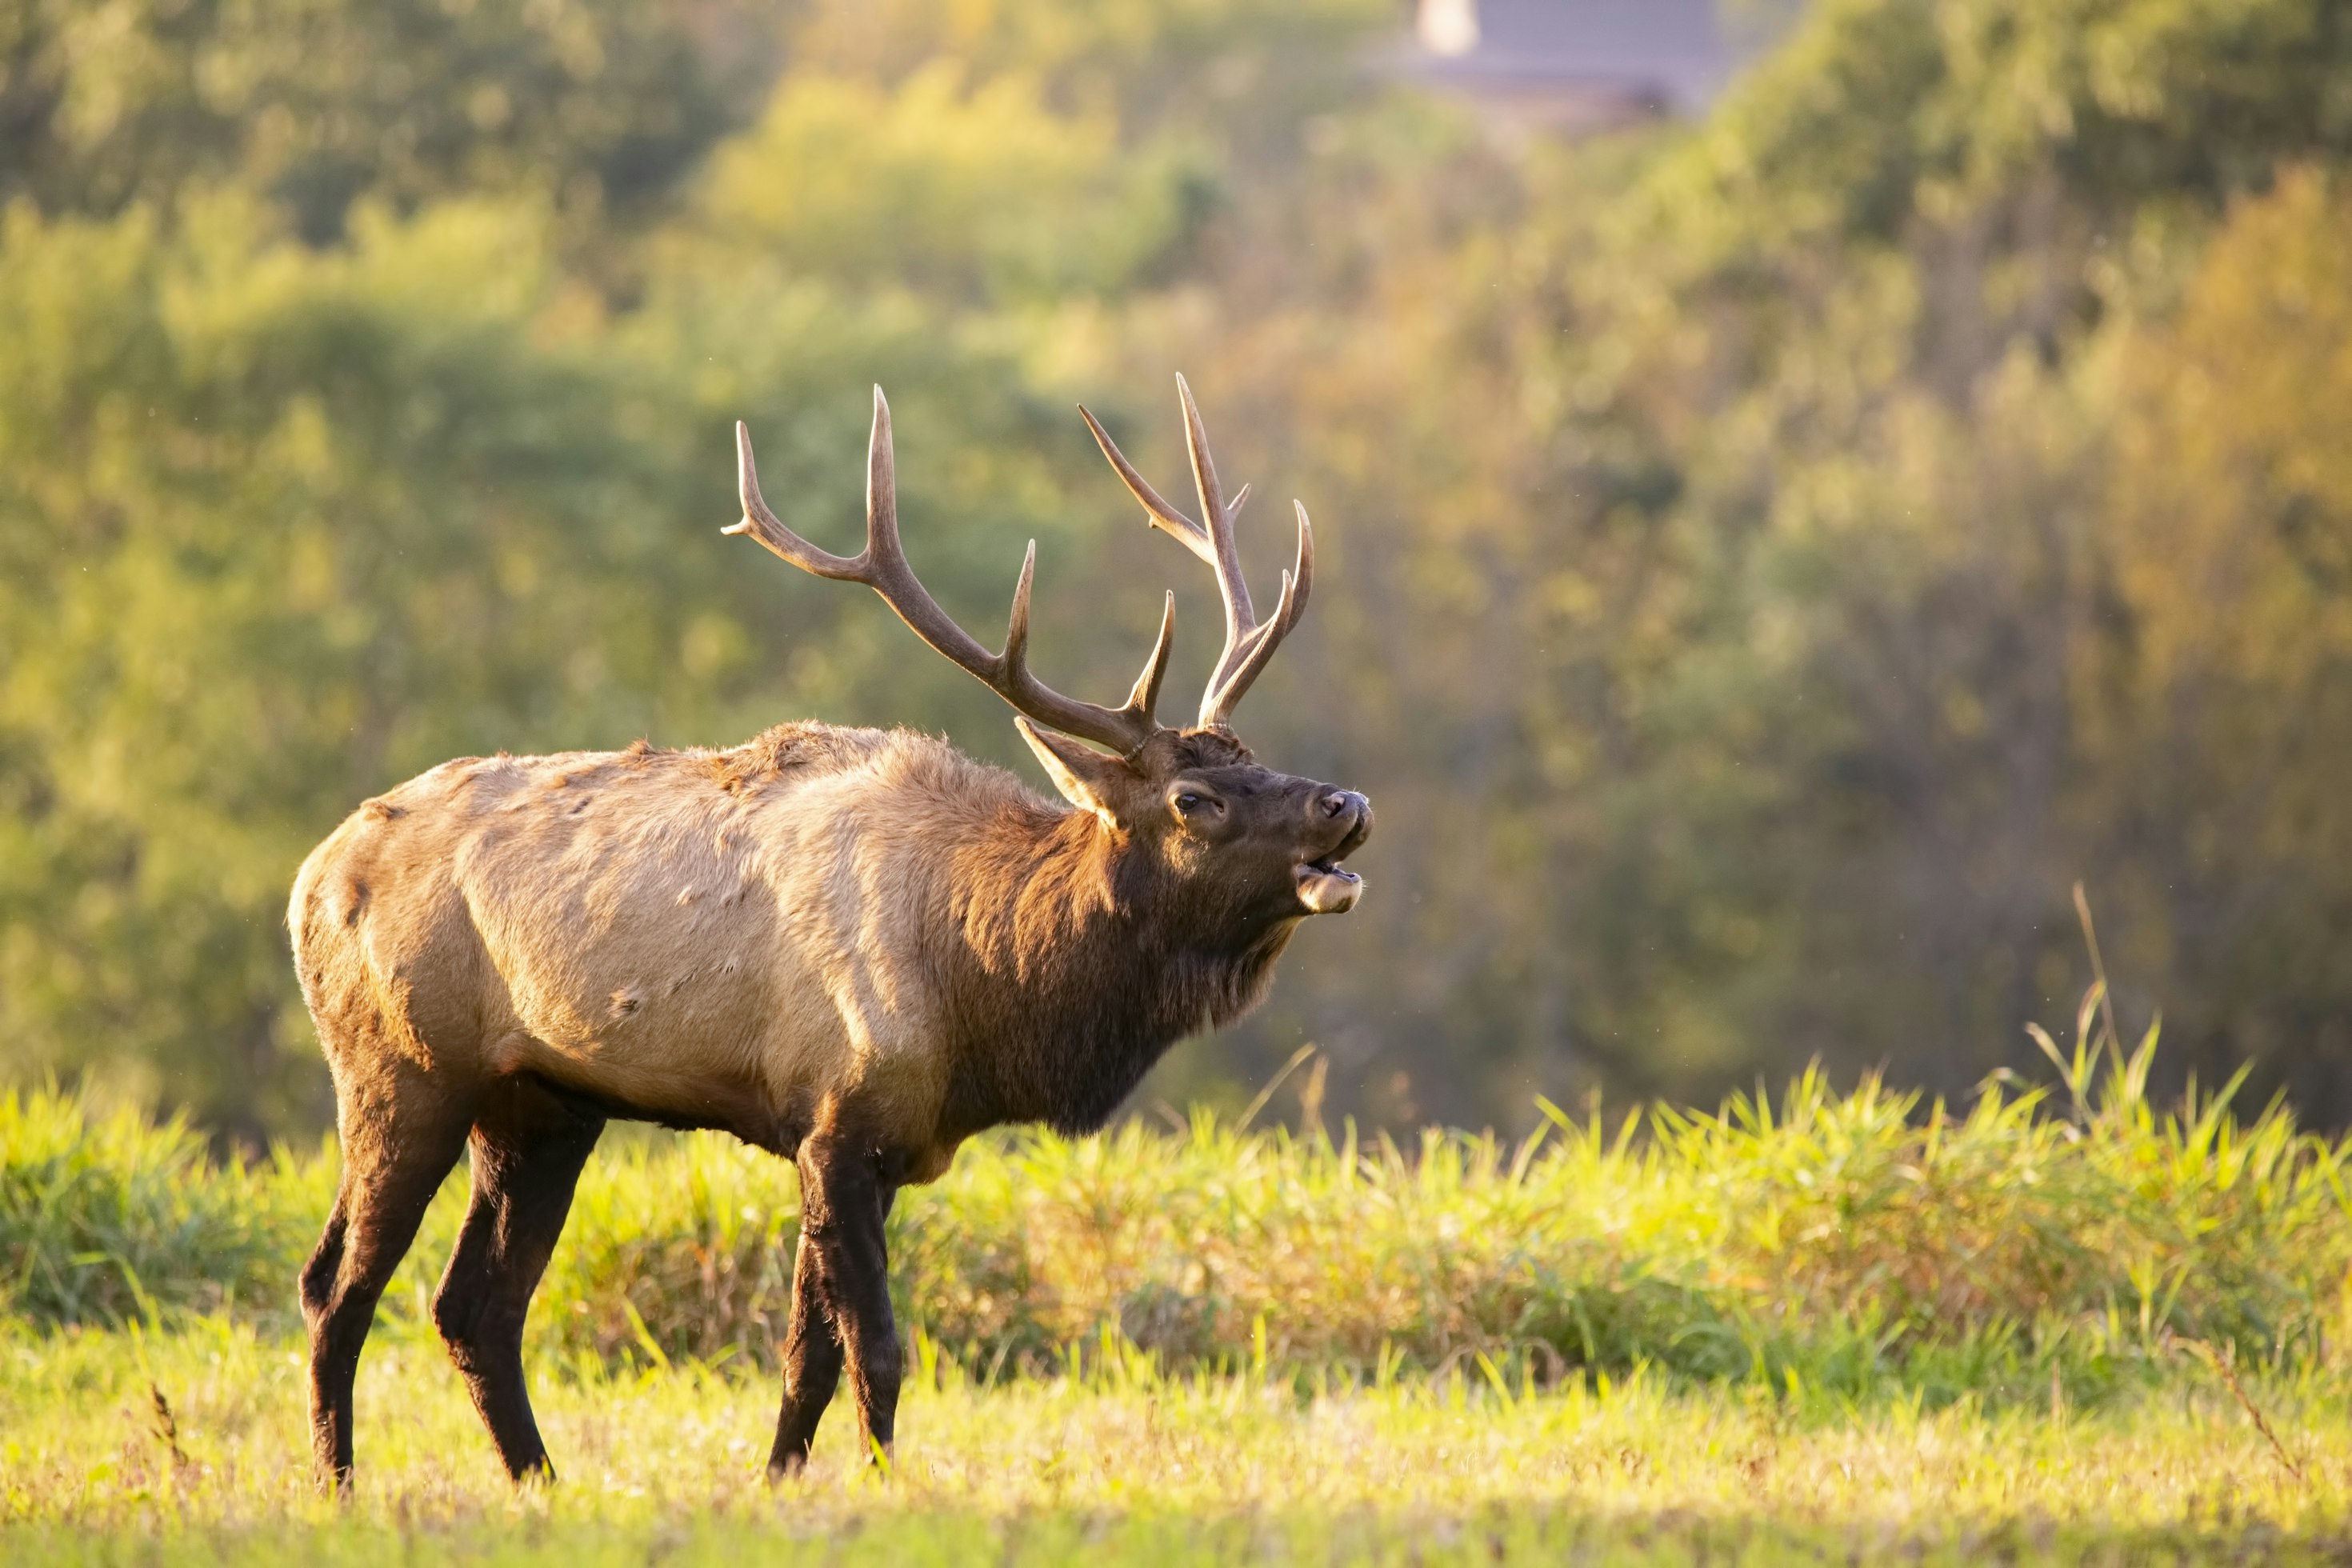 Elk Taken in Bighorns Tests Positive for Brucellosis